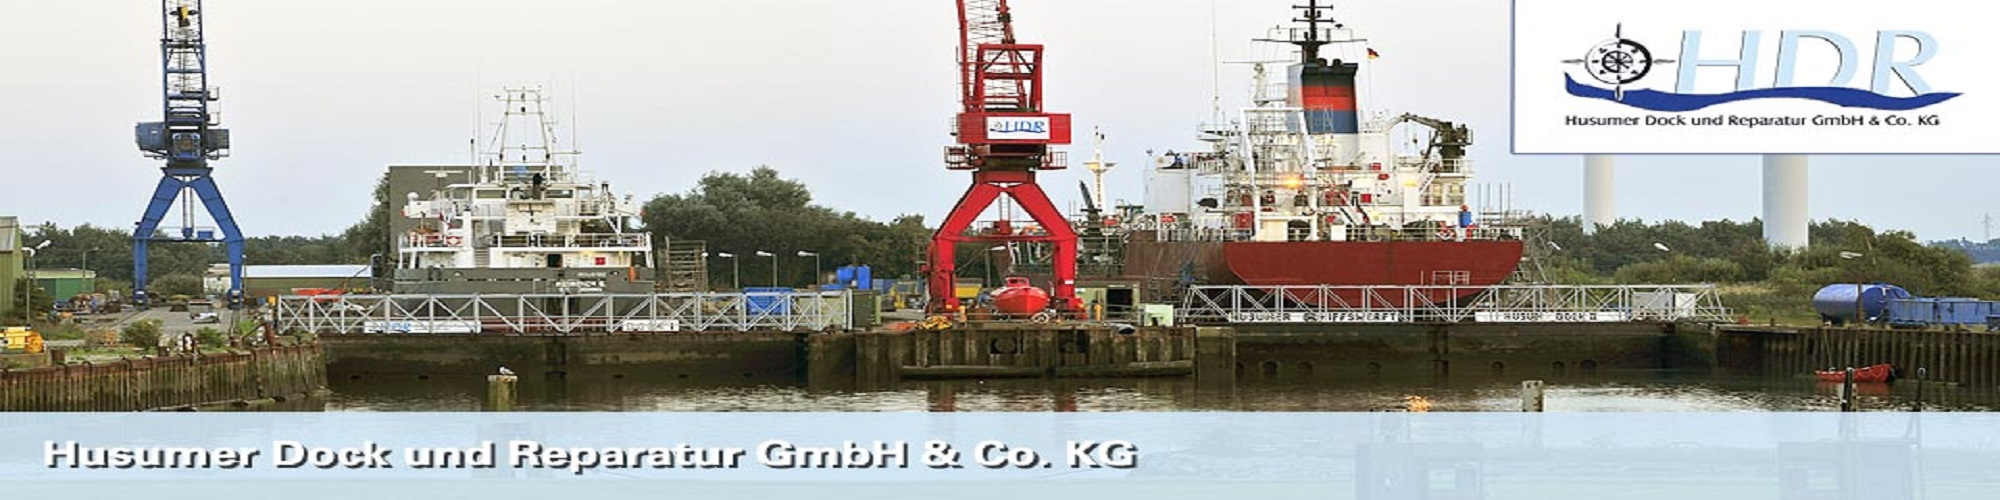 Husumer Dock und Reparatur GmbH & Co.KG